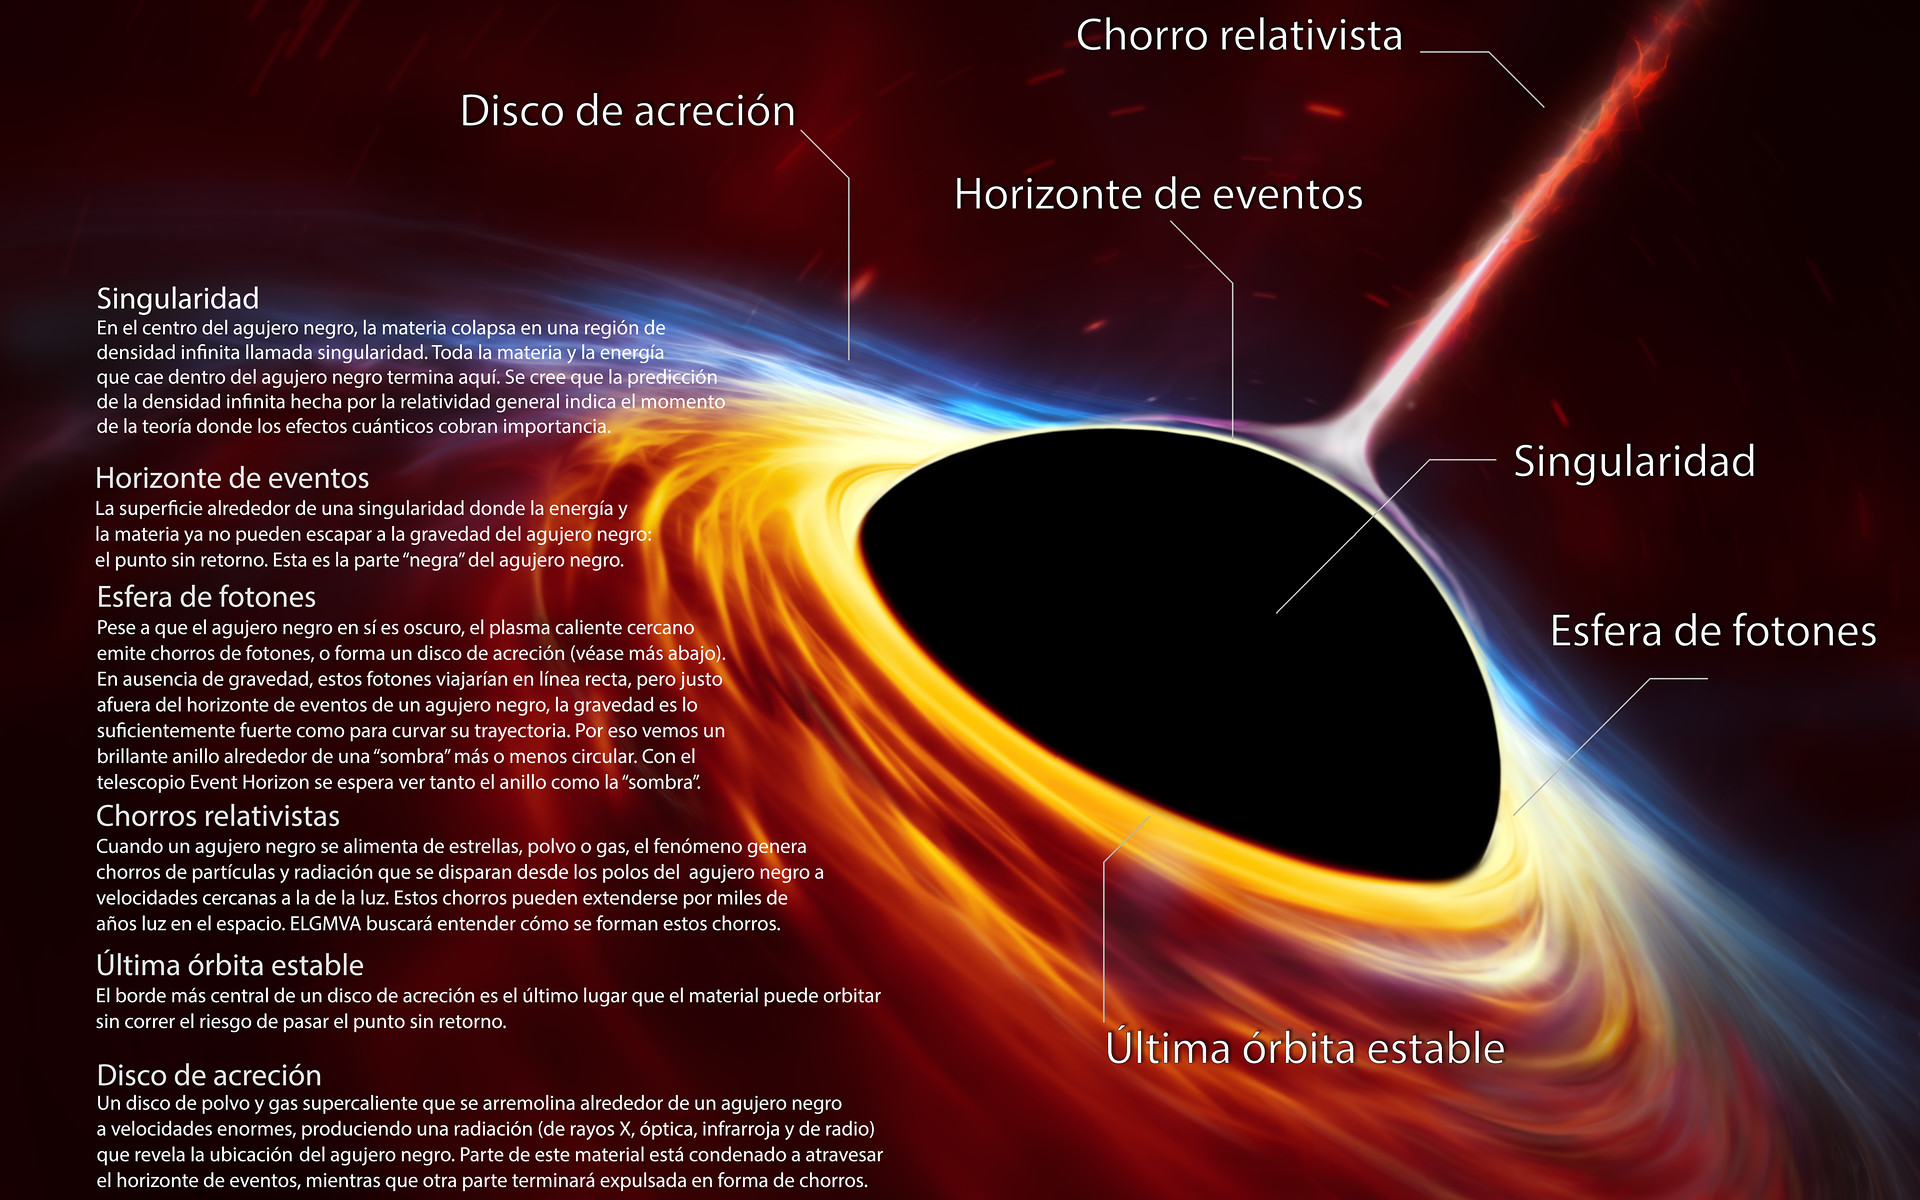 黑洞的事件视界之内,到底有多恐怖?